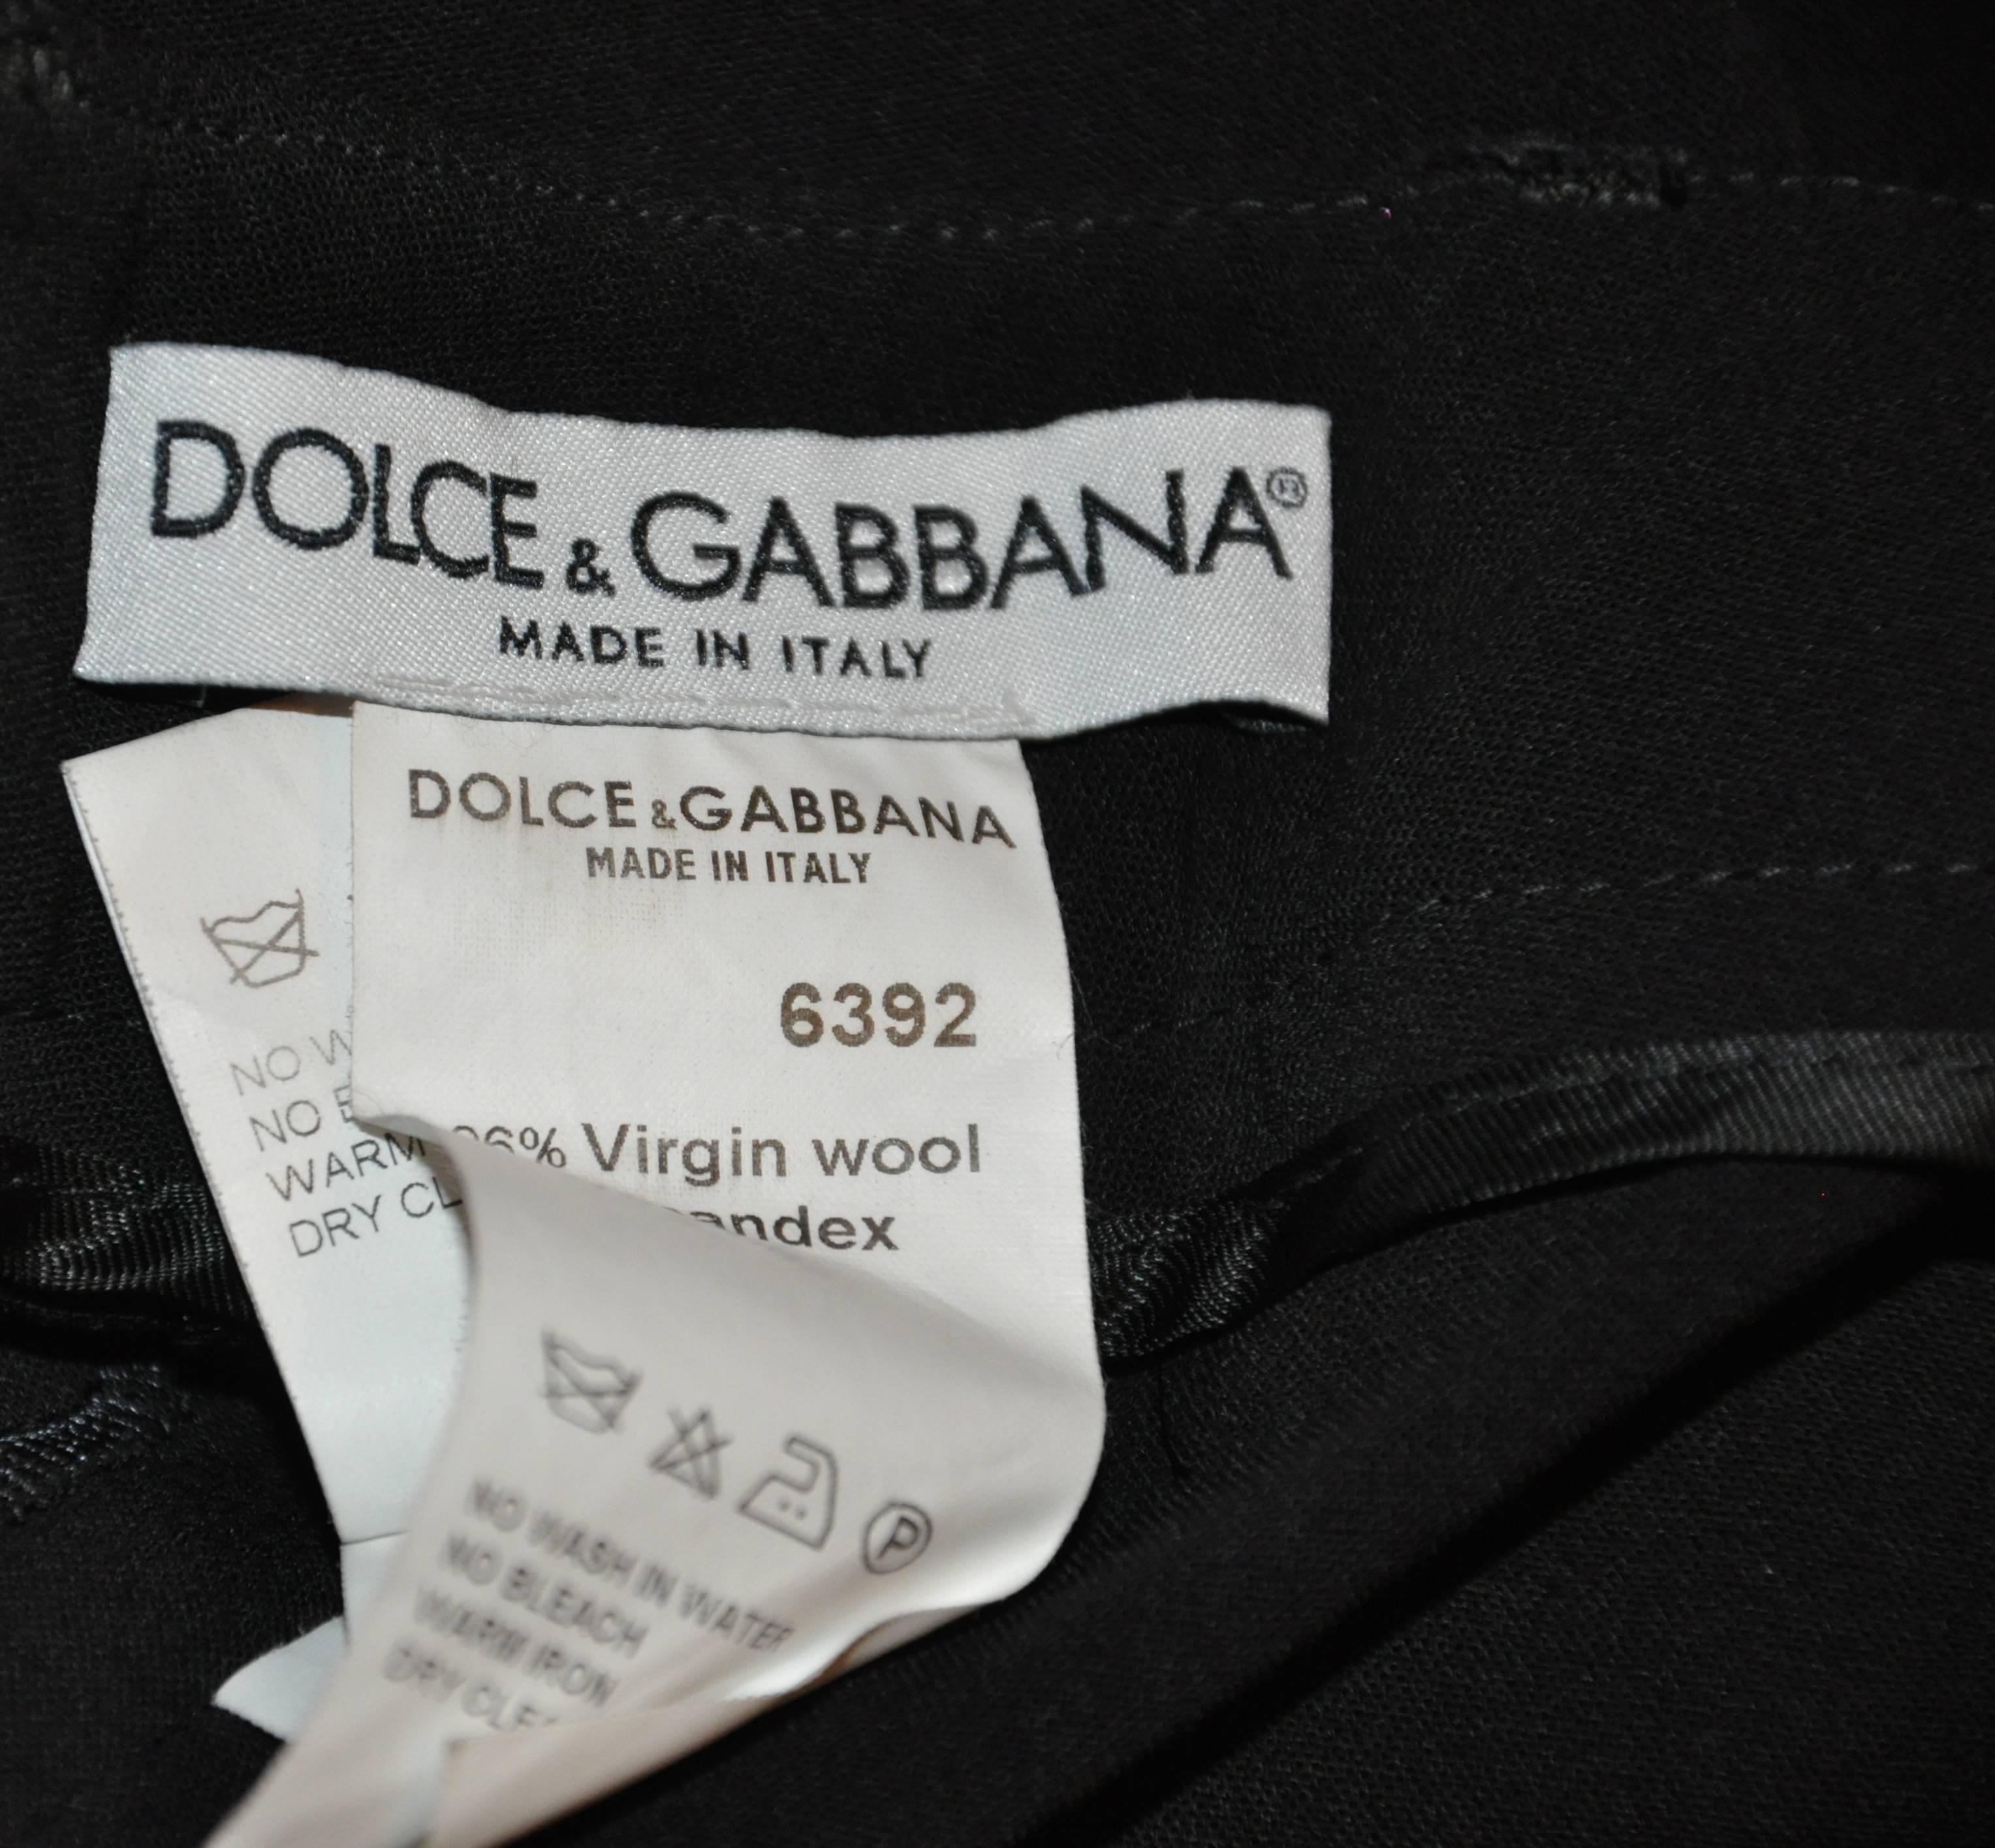           Die schwarze, locker geschnittene Hose von Dolce & Gabbana ist mit einem Bündchen an den Beinen versehen. Die Taille misst 29